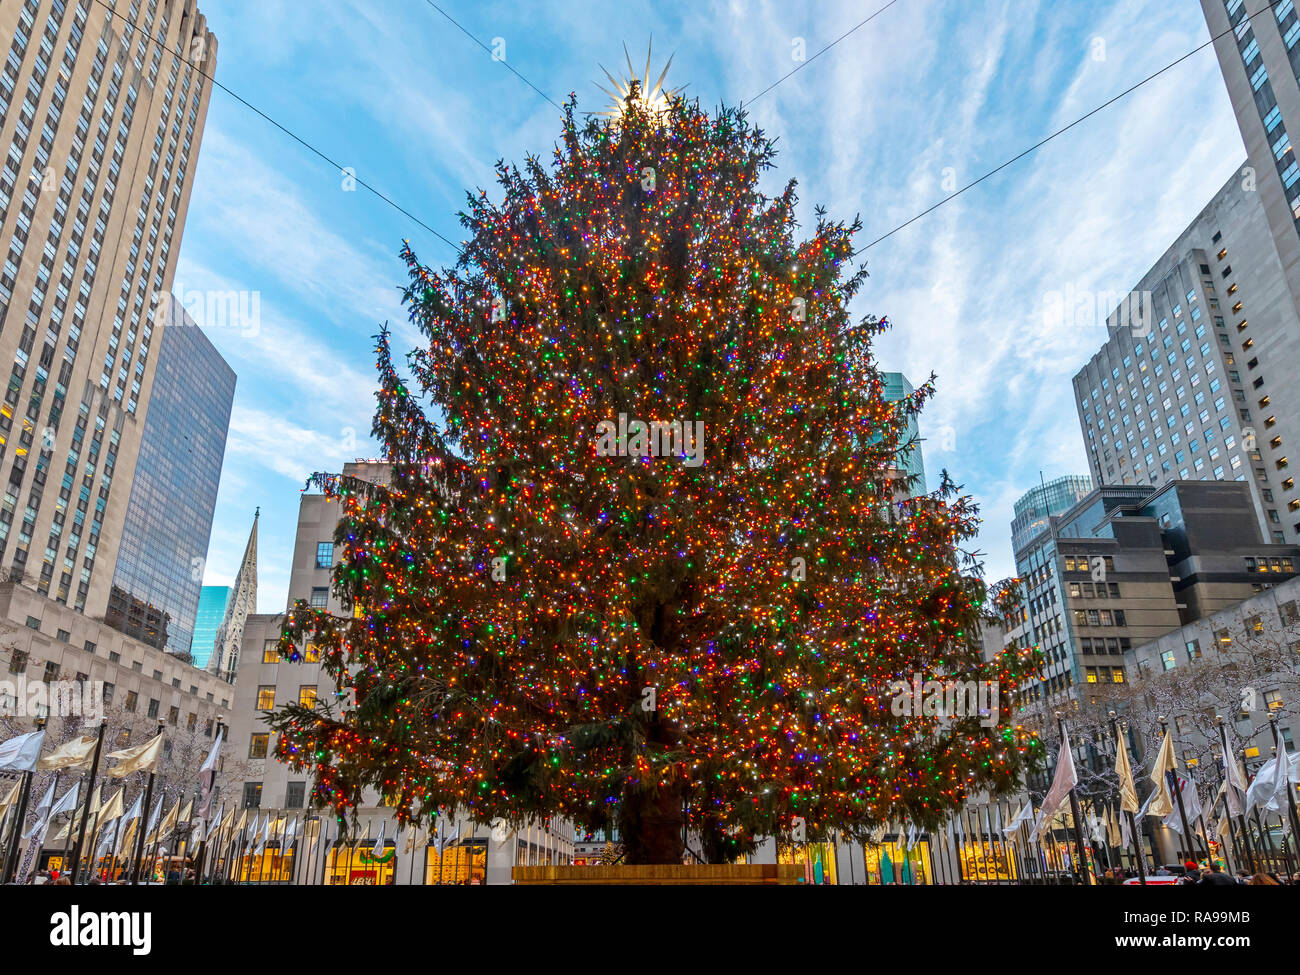 L'arbre de Noël du Rockefeller Center entouré par les anges, les touristes, les visiteurs et les bâtiments. Banque D'Images